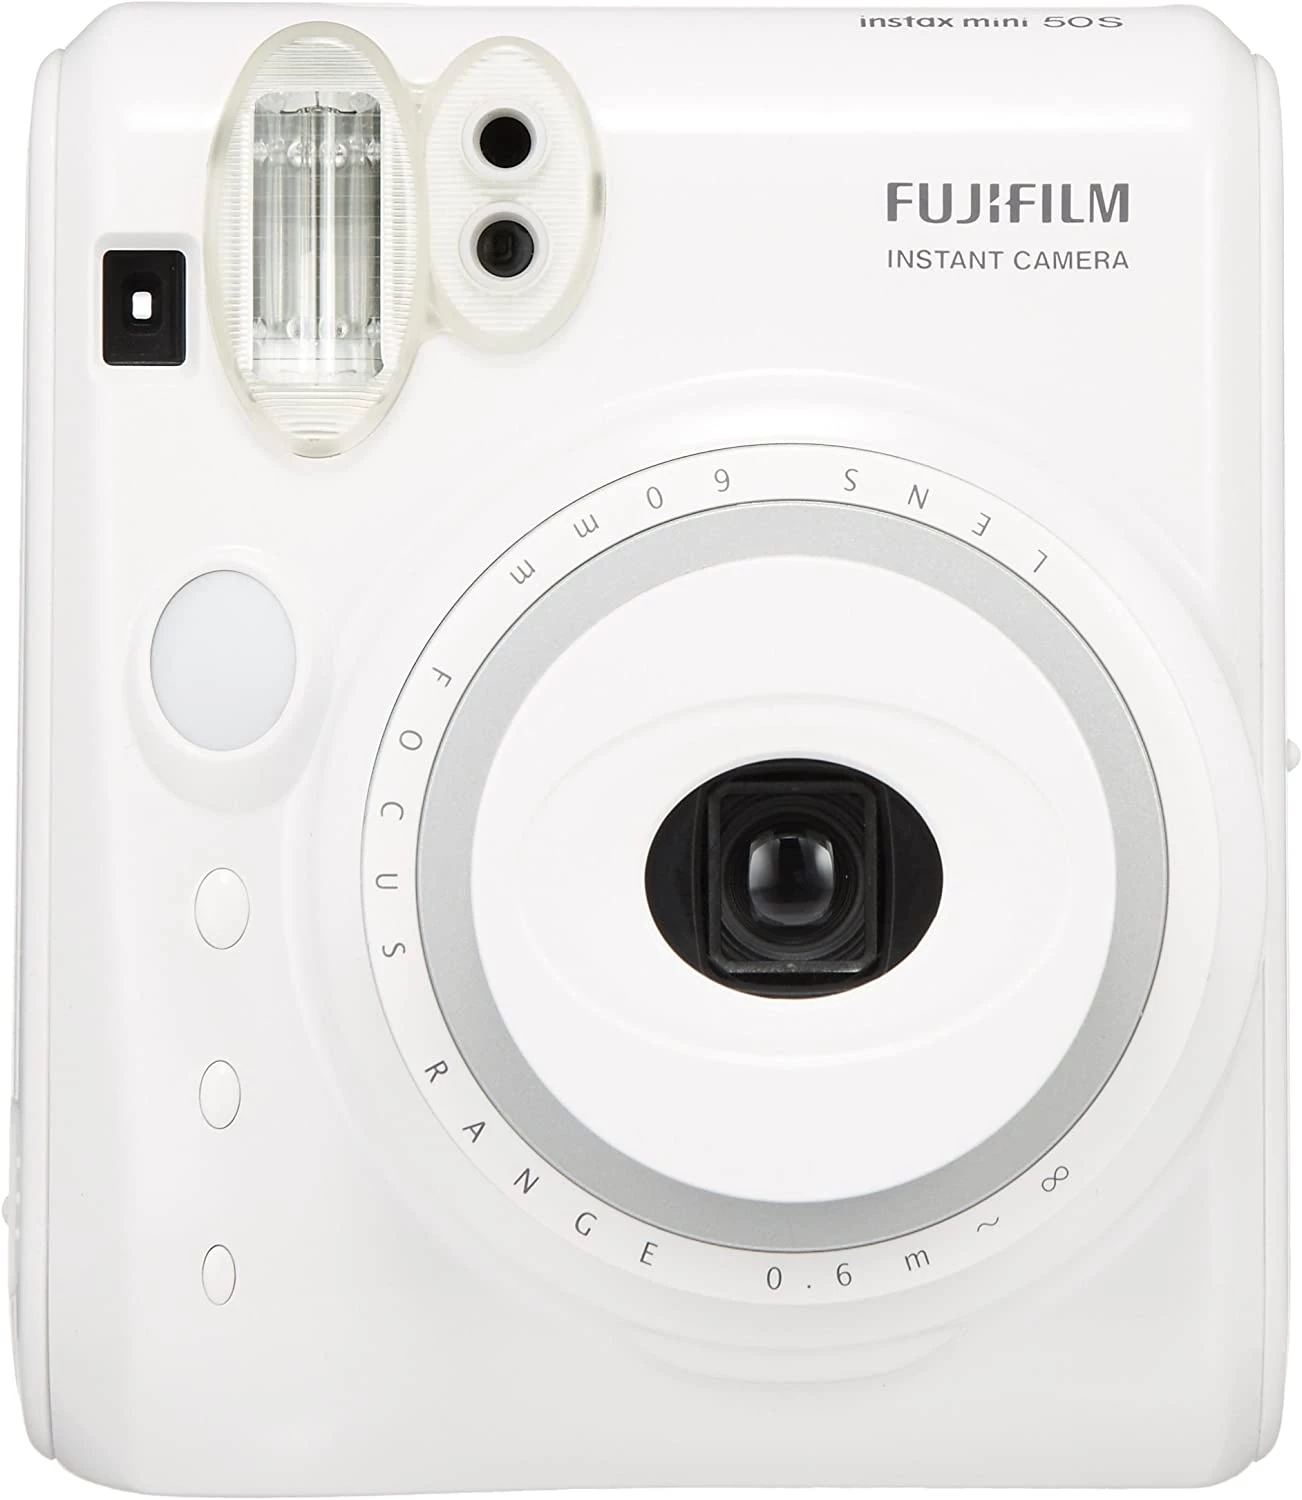 Fujifilm Instax Mini 50S Piano White